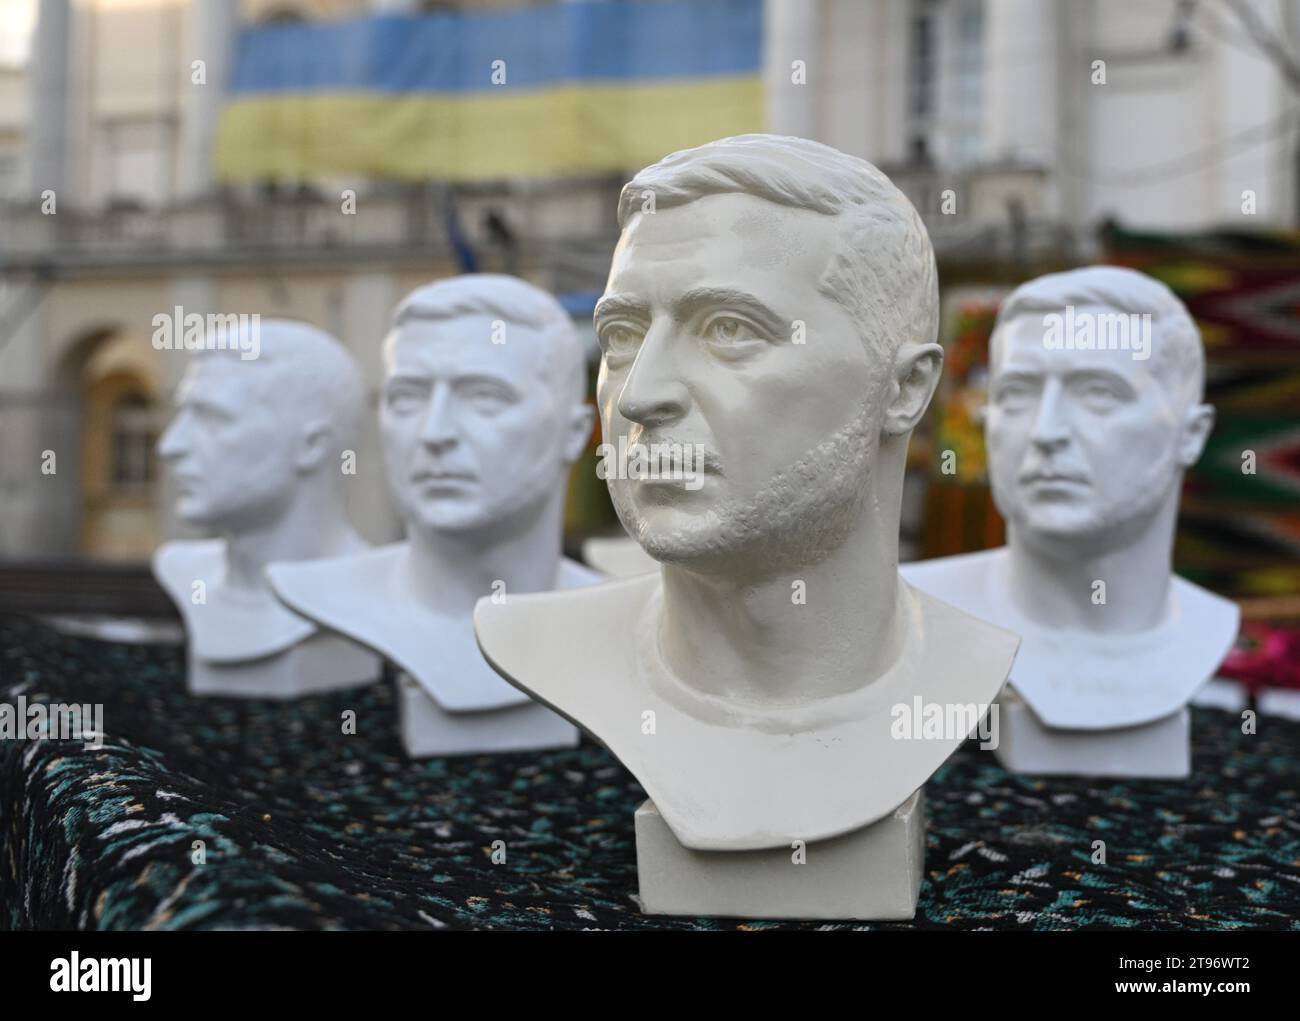 Lviv, Ukraine - 10 février 2023. Des bustes en plâtre représentant le président ukrainien Volodymyr Zelensky sont vendus comme souvenirs sur un marché de la ville de Banque D'Images